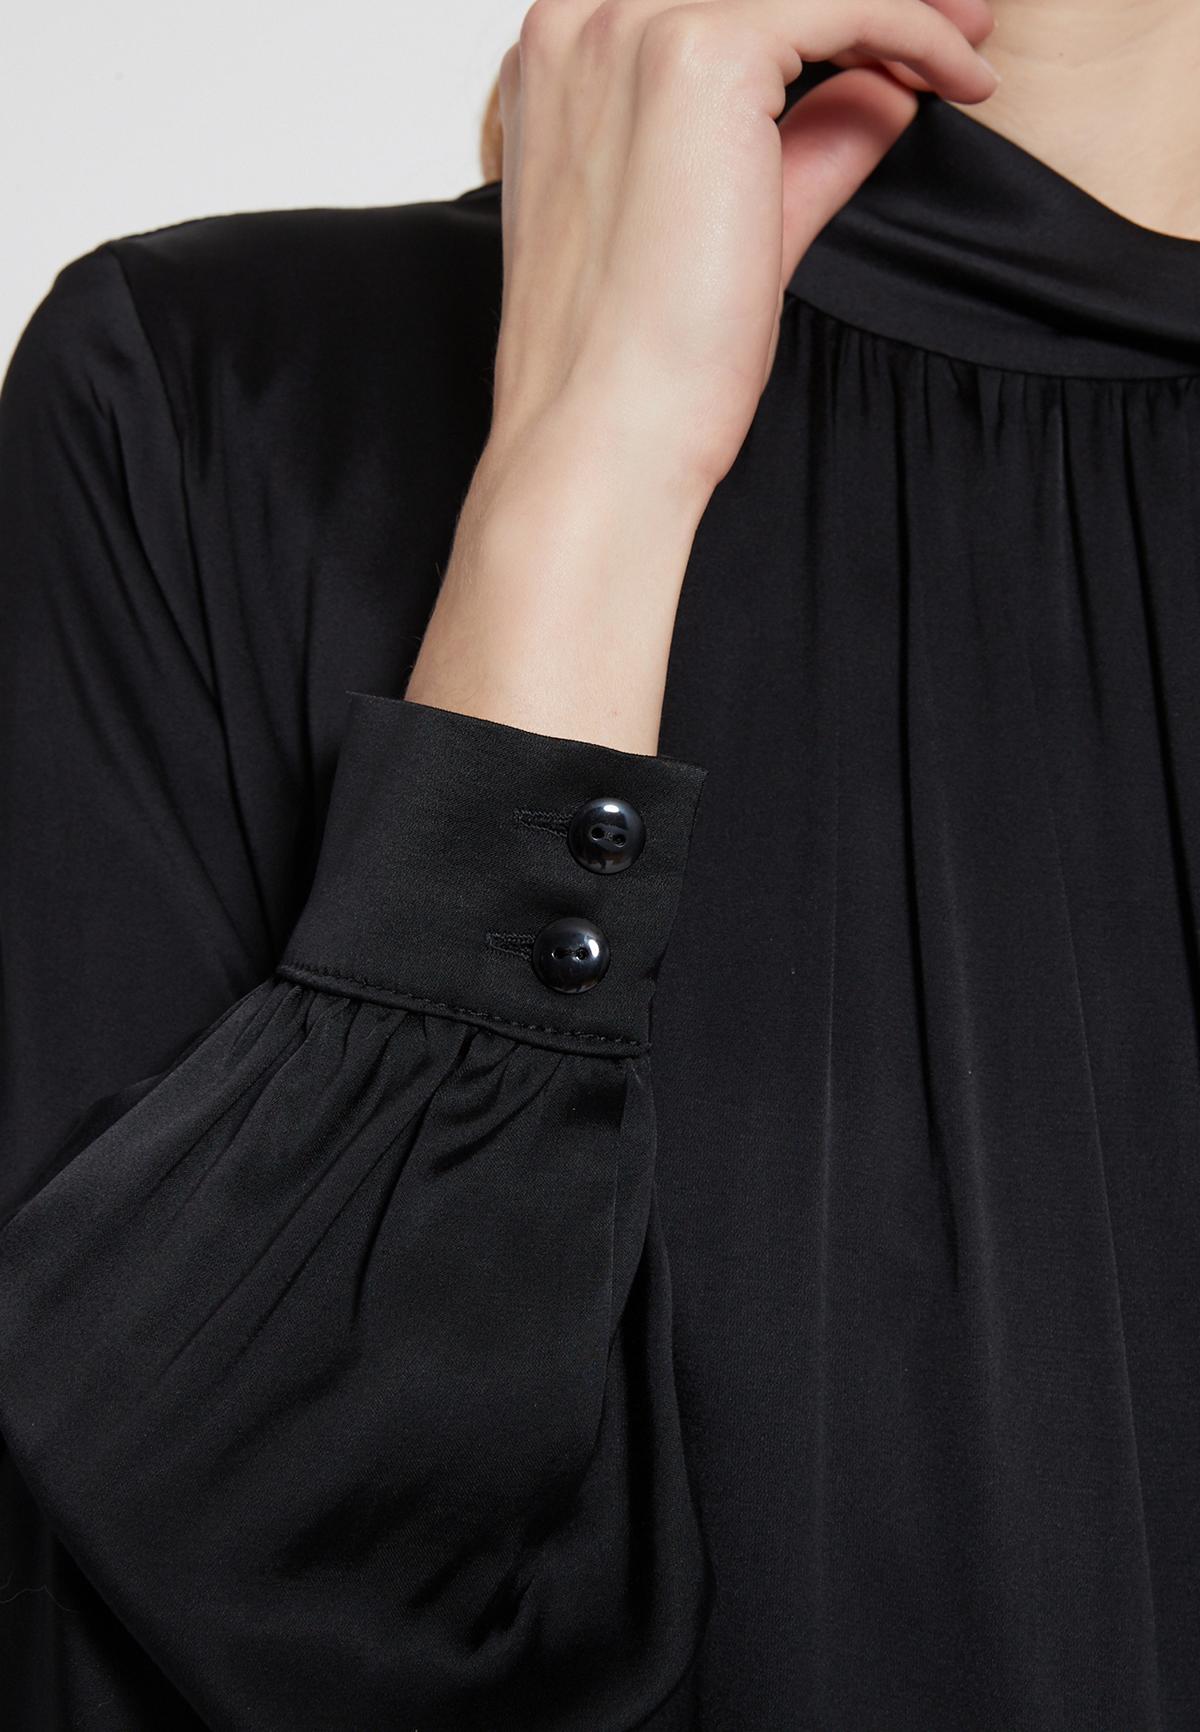 Elegant satin dress Ekemia in black with cuffs | Ana Alcazar